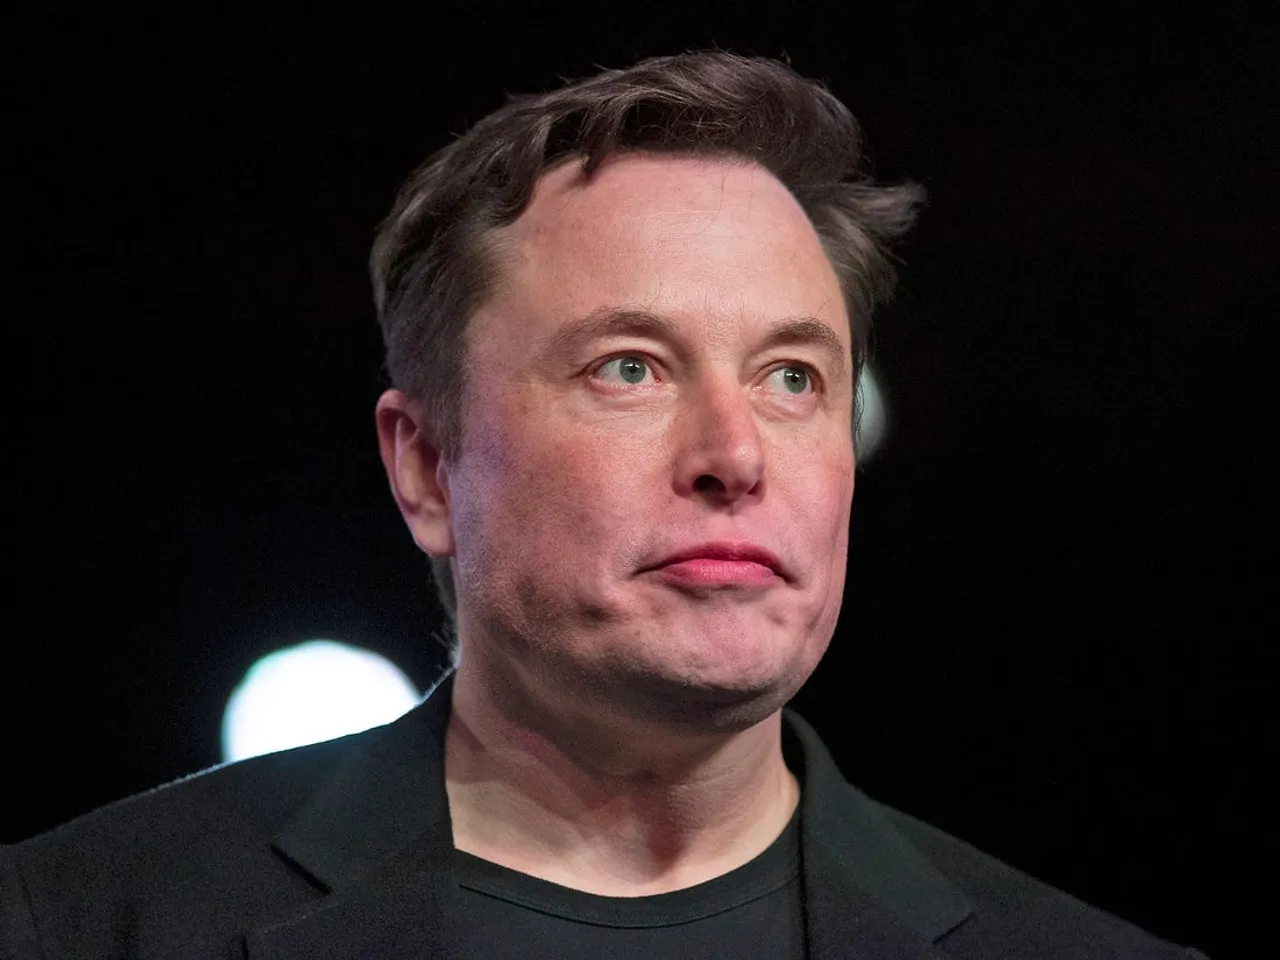 SpaceX Plans Uncrewed Mars Flight in 2 Years: Elon Musk